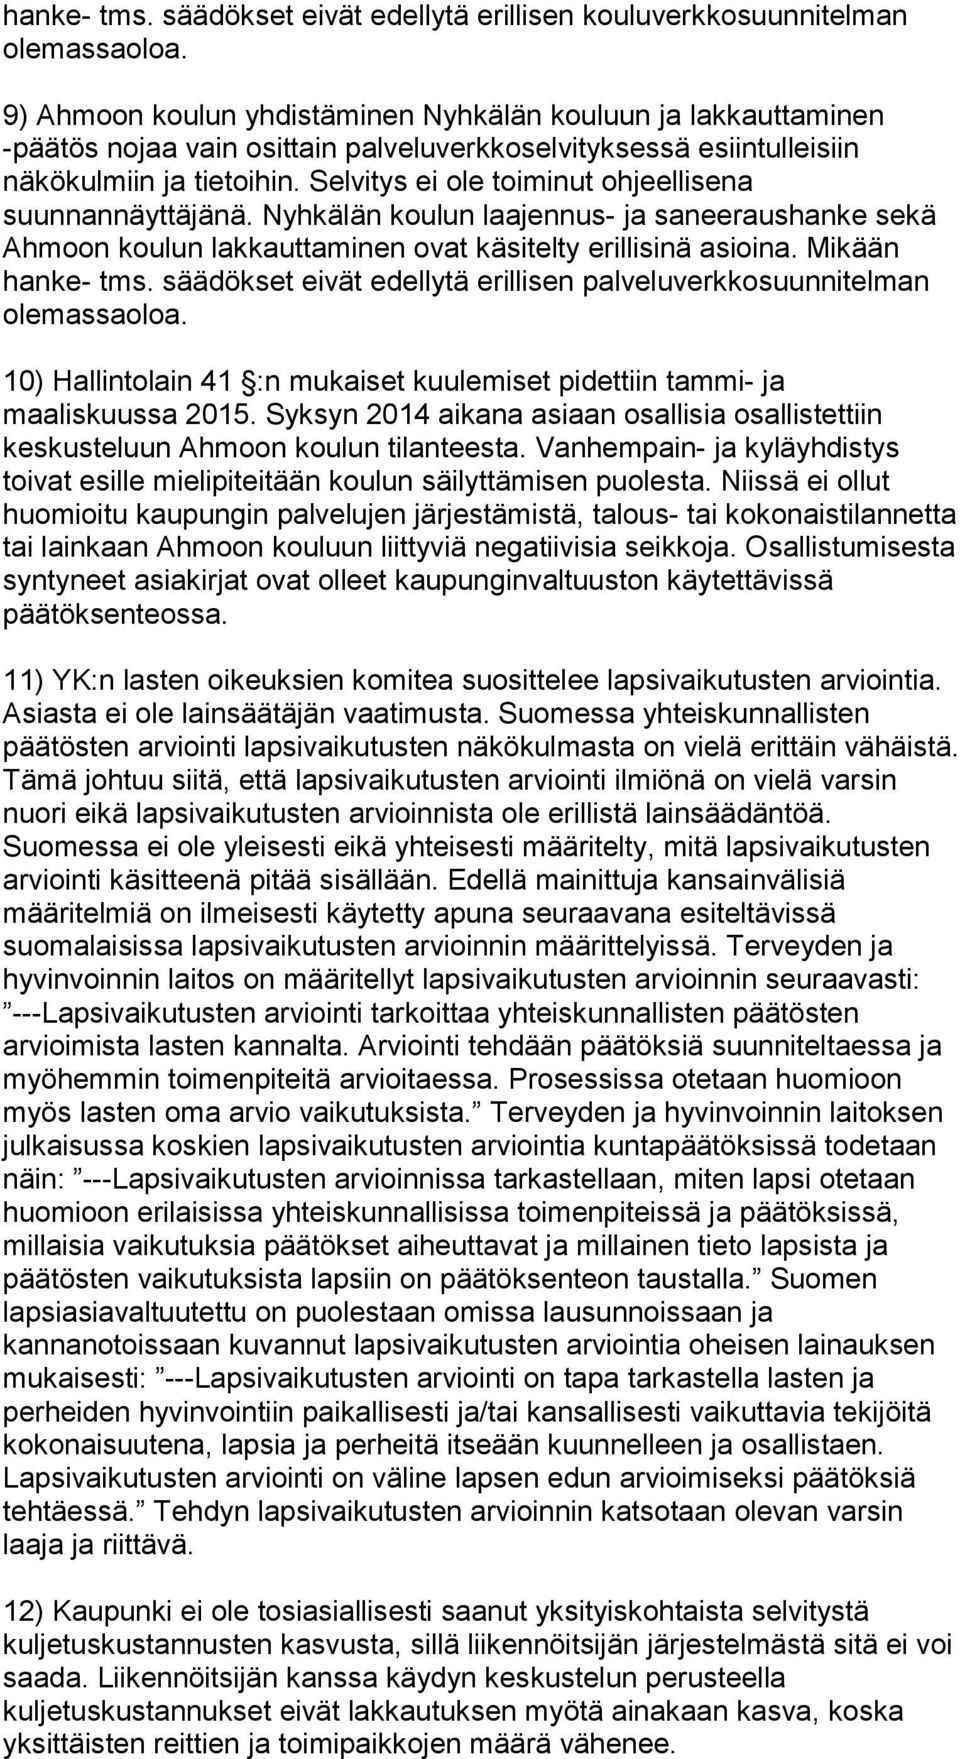 Selvitys ei ole toiminut ohjeellisena suunnannäyttäjänä. Nyhkälän koulun laajennus- ja saneeraushanke sekä Ahmoon koulun lakkauttaminen ovat käsitelty erillisinä asioina. Mikään hanke- tms.